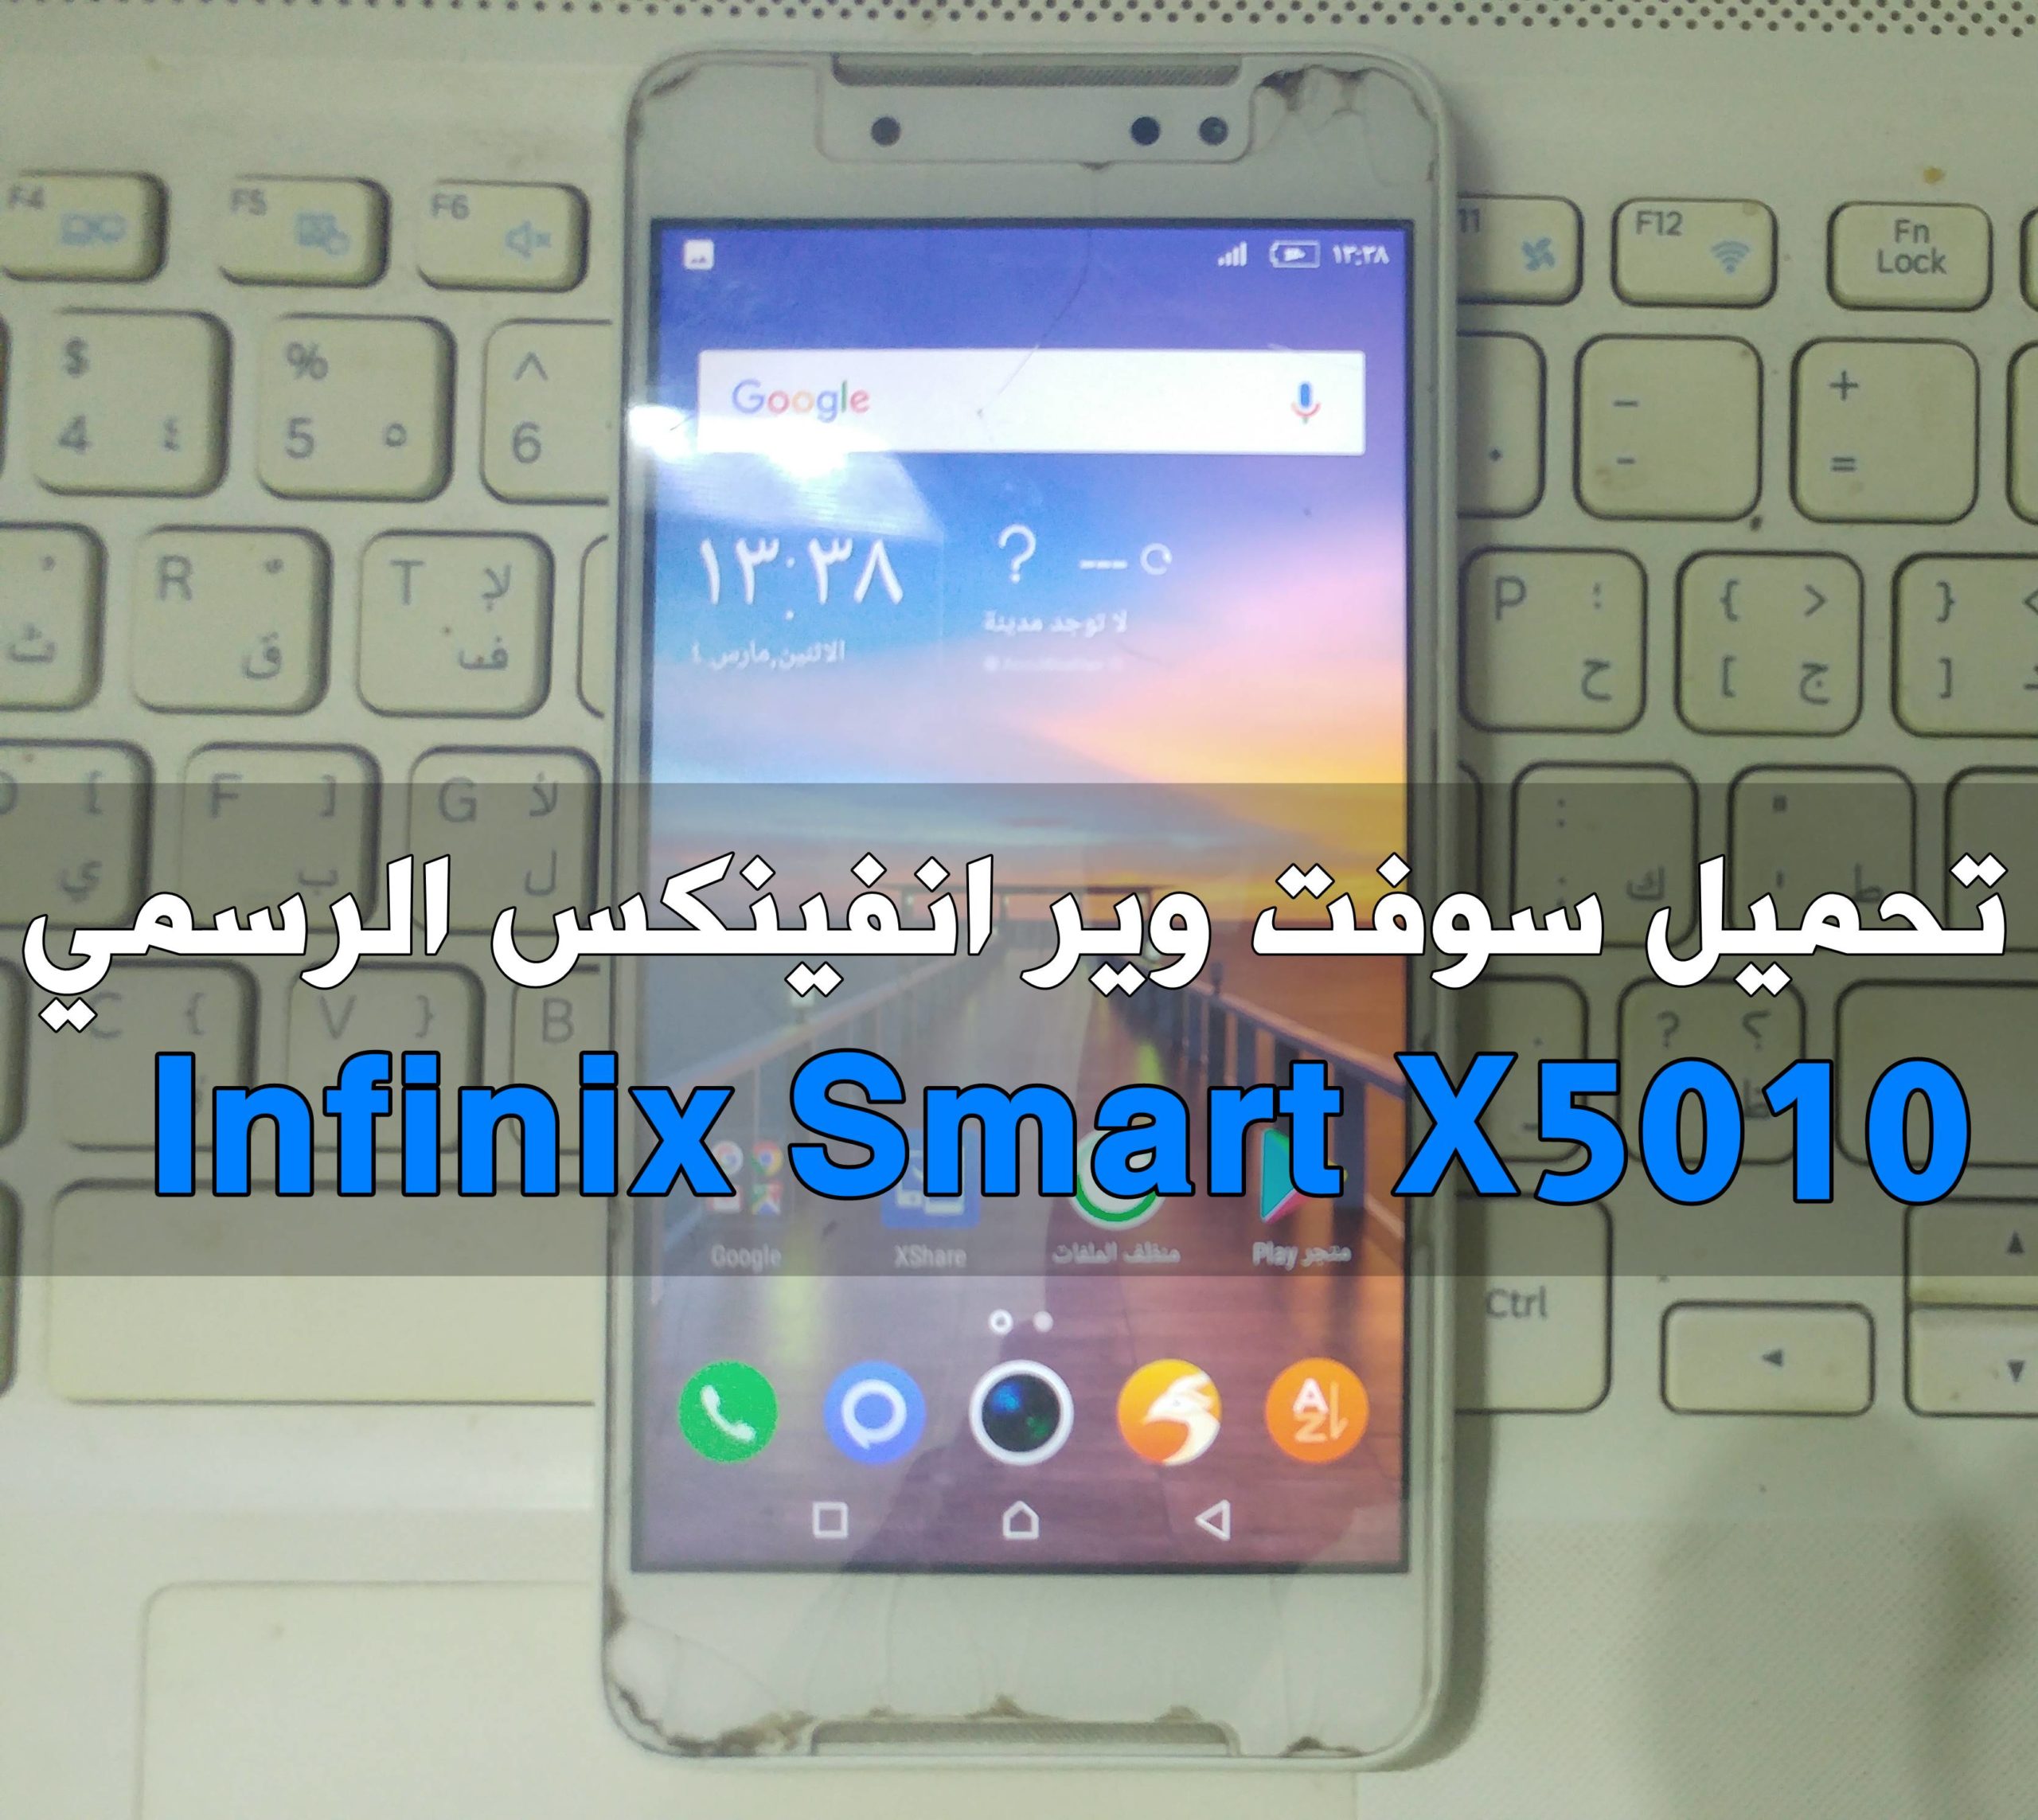 سوفت وير Infinix Smart الرسمي موديل X5010 جميع الاصدارات